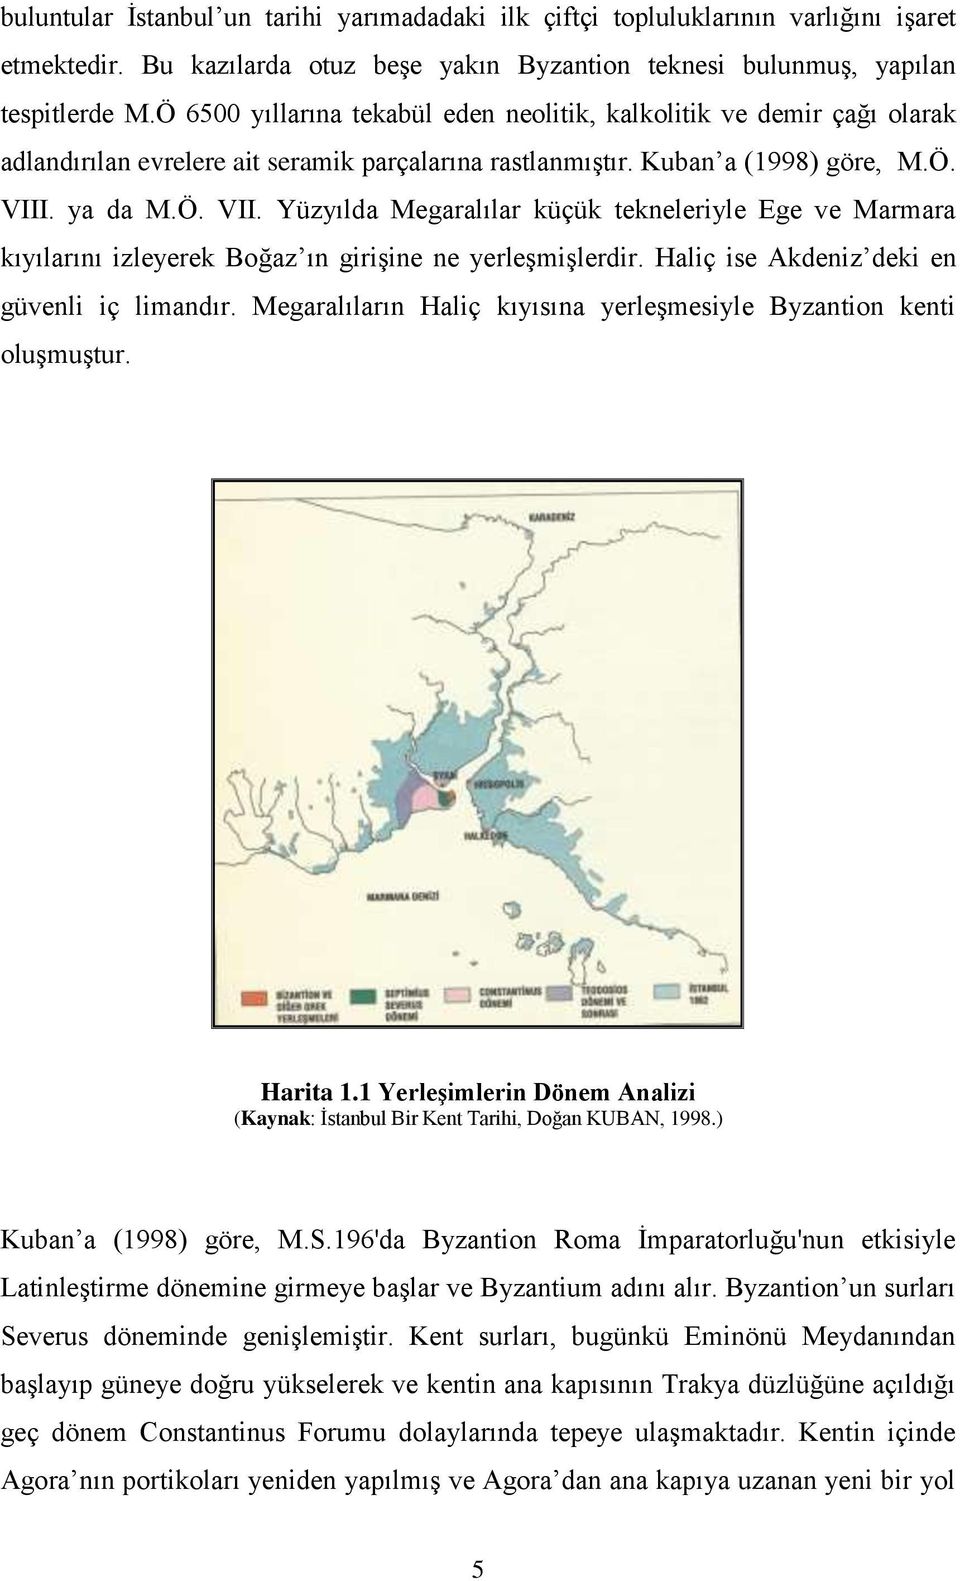 . ya da M.Ö. VII. Yüzyılda Megaralılar küçük tekneleriyle Ege ve Marmara kıyılarını izleyerek Boğaz ın girişine ne yerleşmişlerdir. Haliç ise Akdeniz deki en güvenli iç limandır.